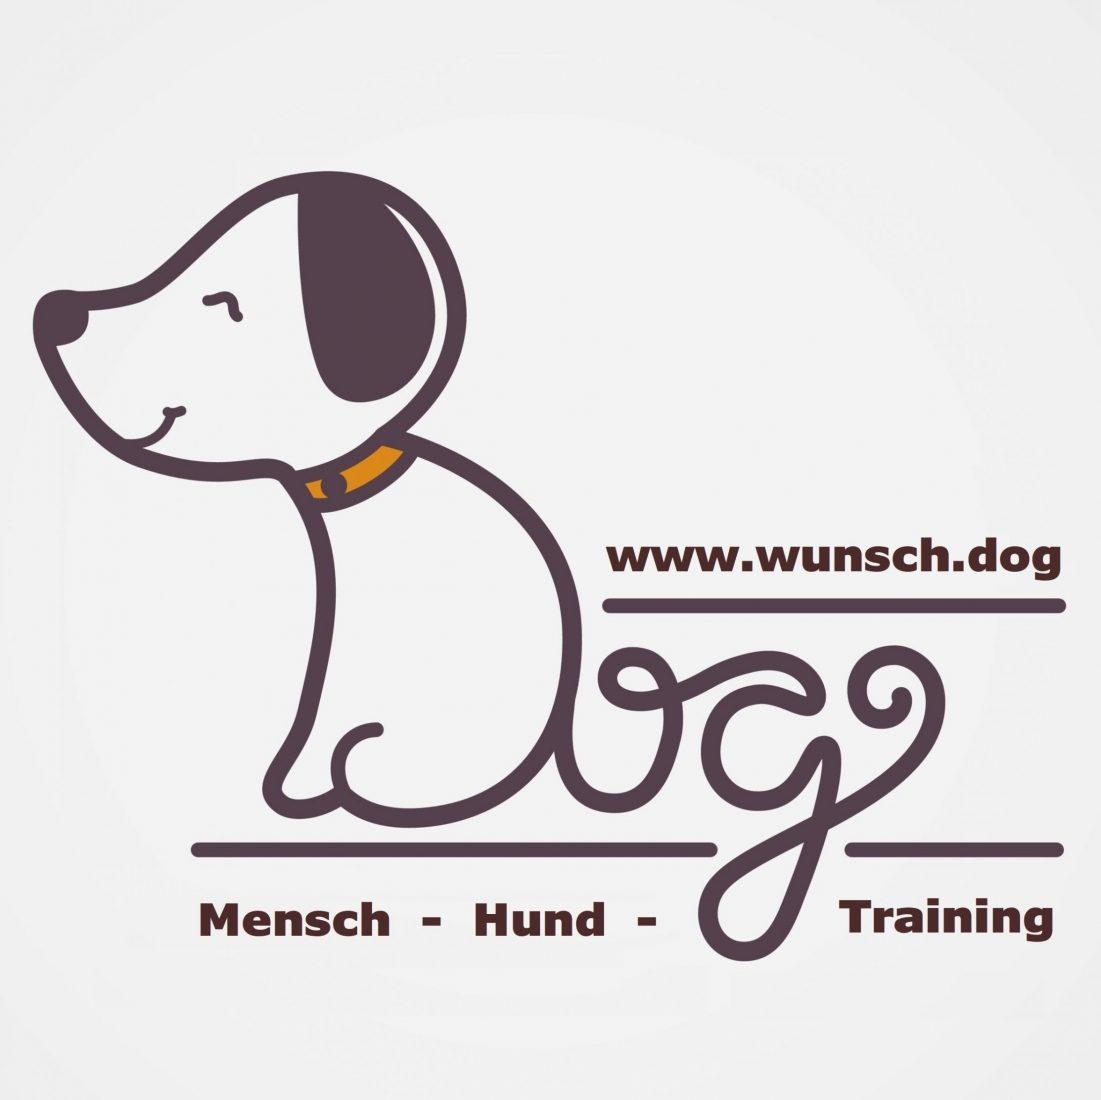 wunsch.dog ist Deine mobile Hundeschule in Nürnberg, Fürth, Herzogenaurach und im Landkreis Fürth.